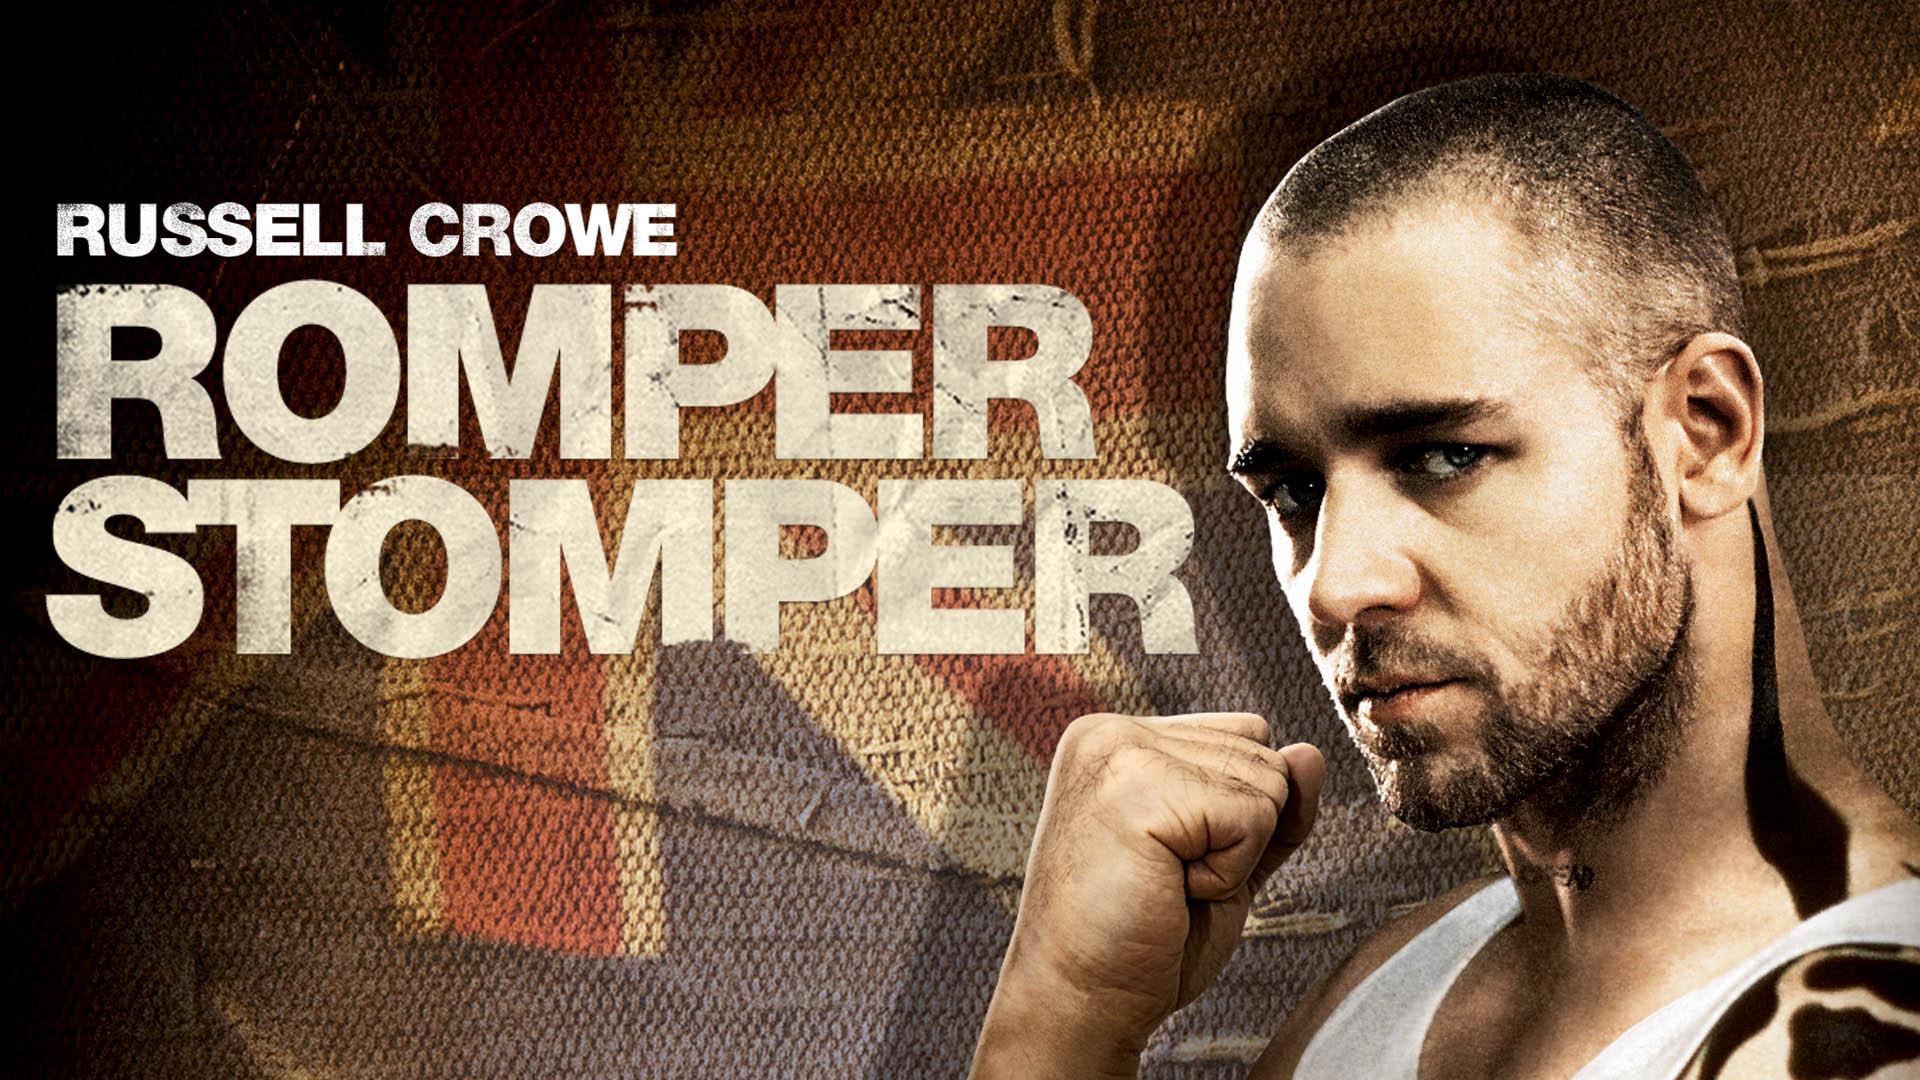 پوستر سینمایی فیلم Romper Stomper با حضور راسل کرو